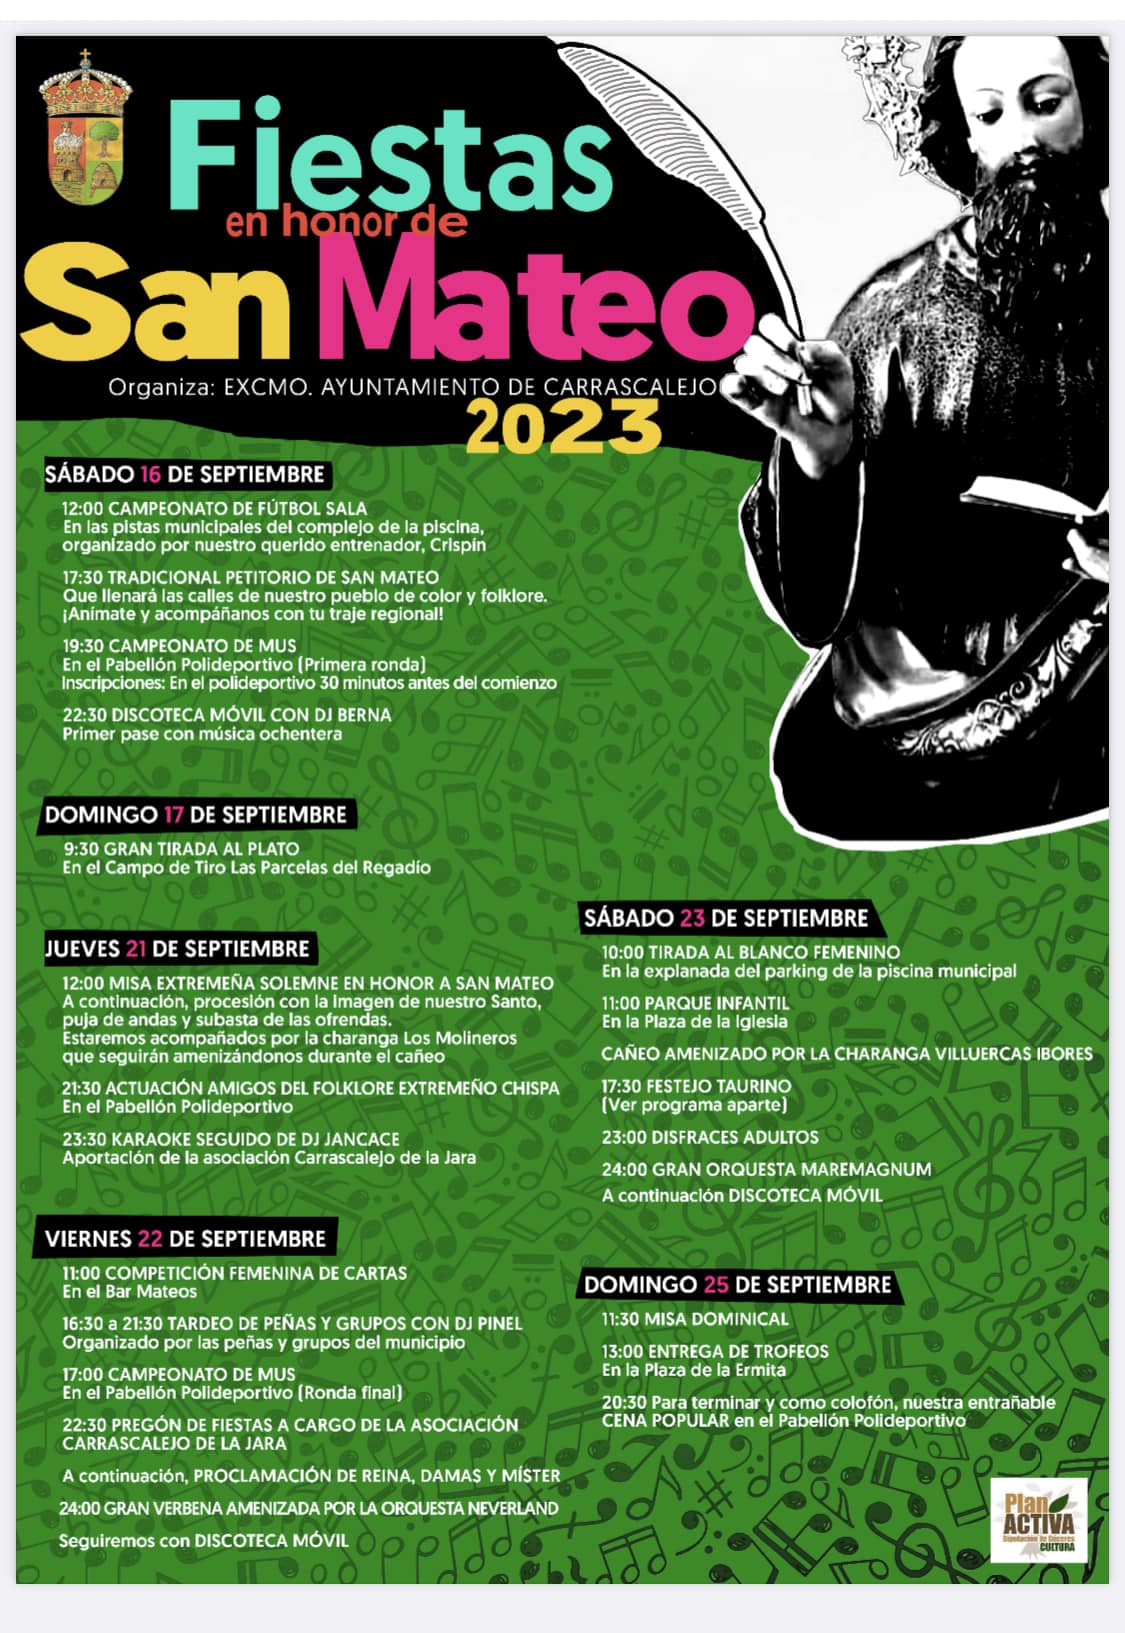 Fiestas en honor a San Mateo (2023) - Carrascalejo (Cáceres)